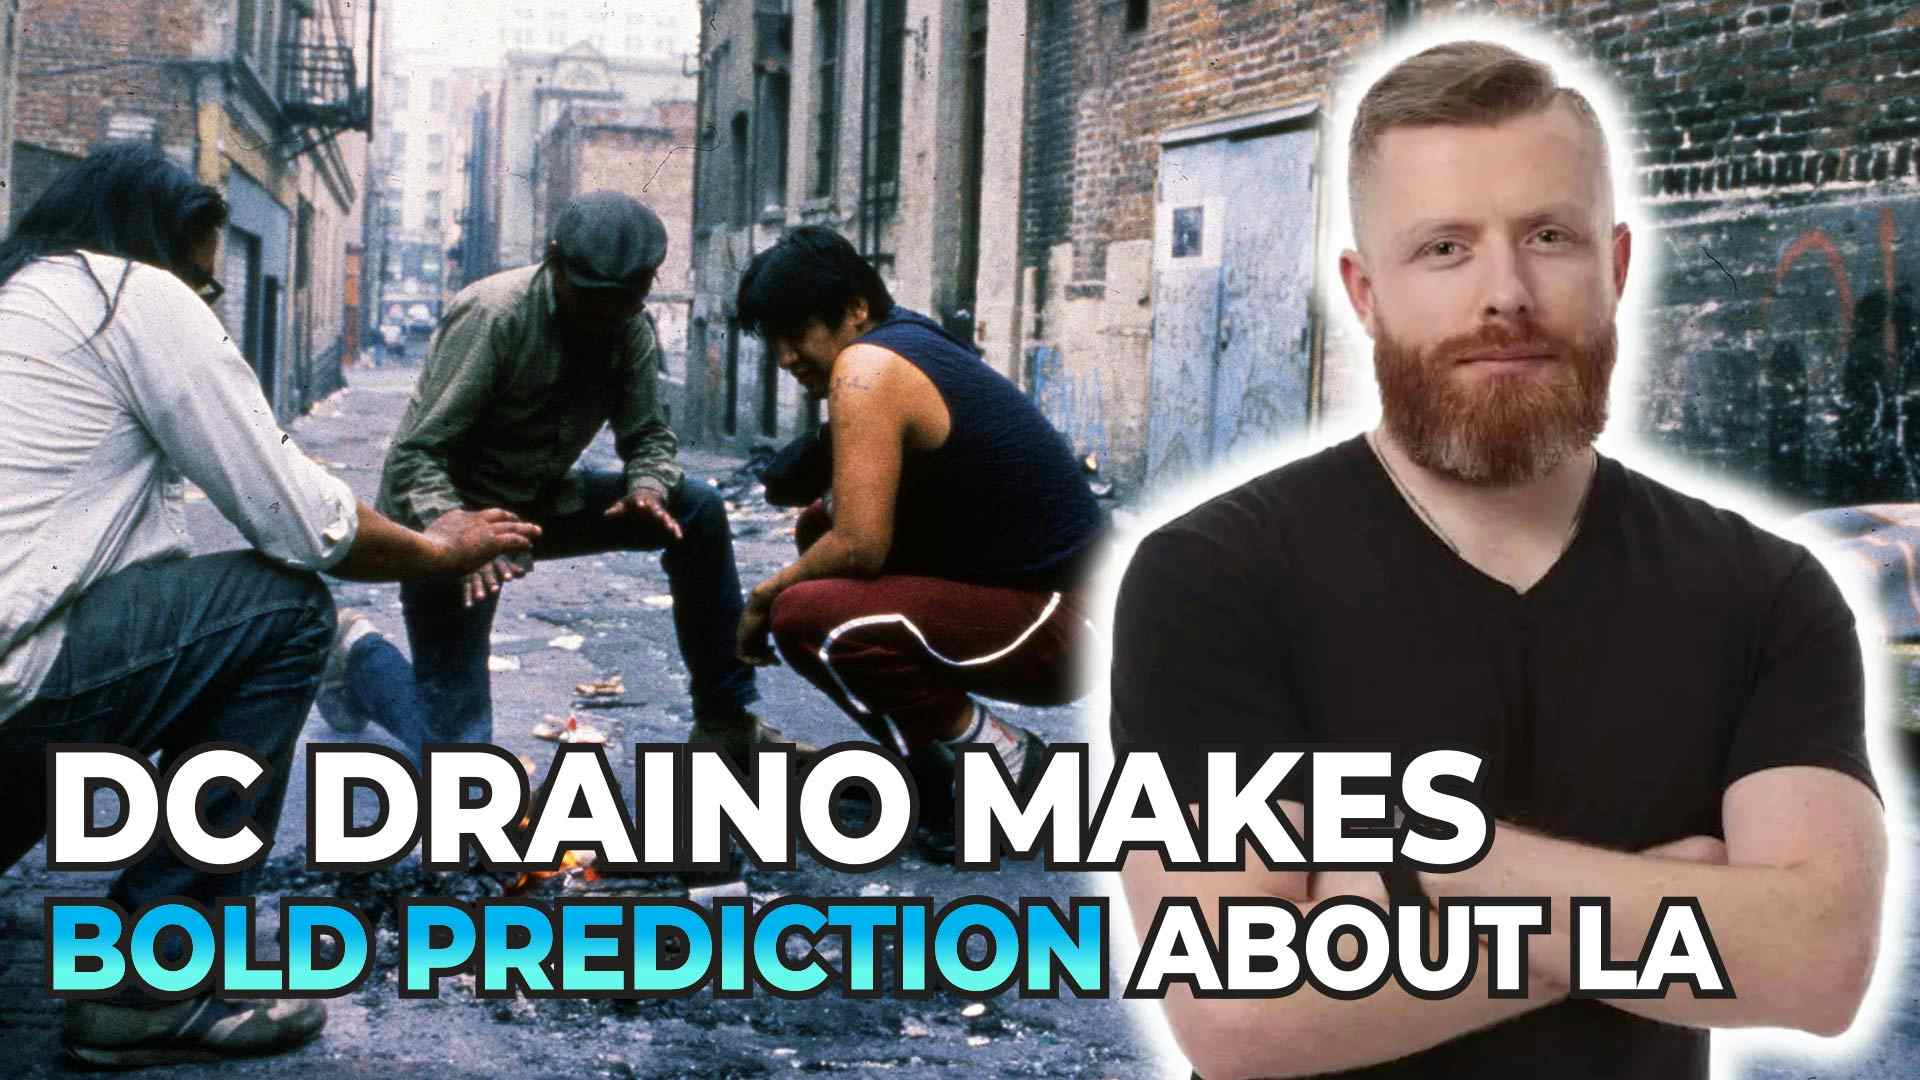 DC Draino Makes a Bold Prediction About LA